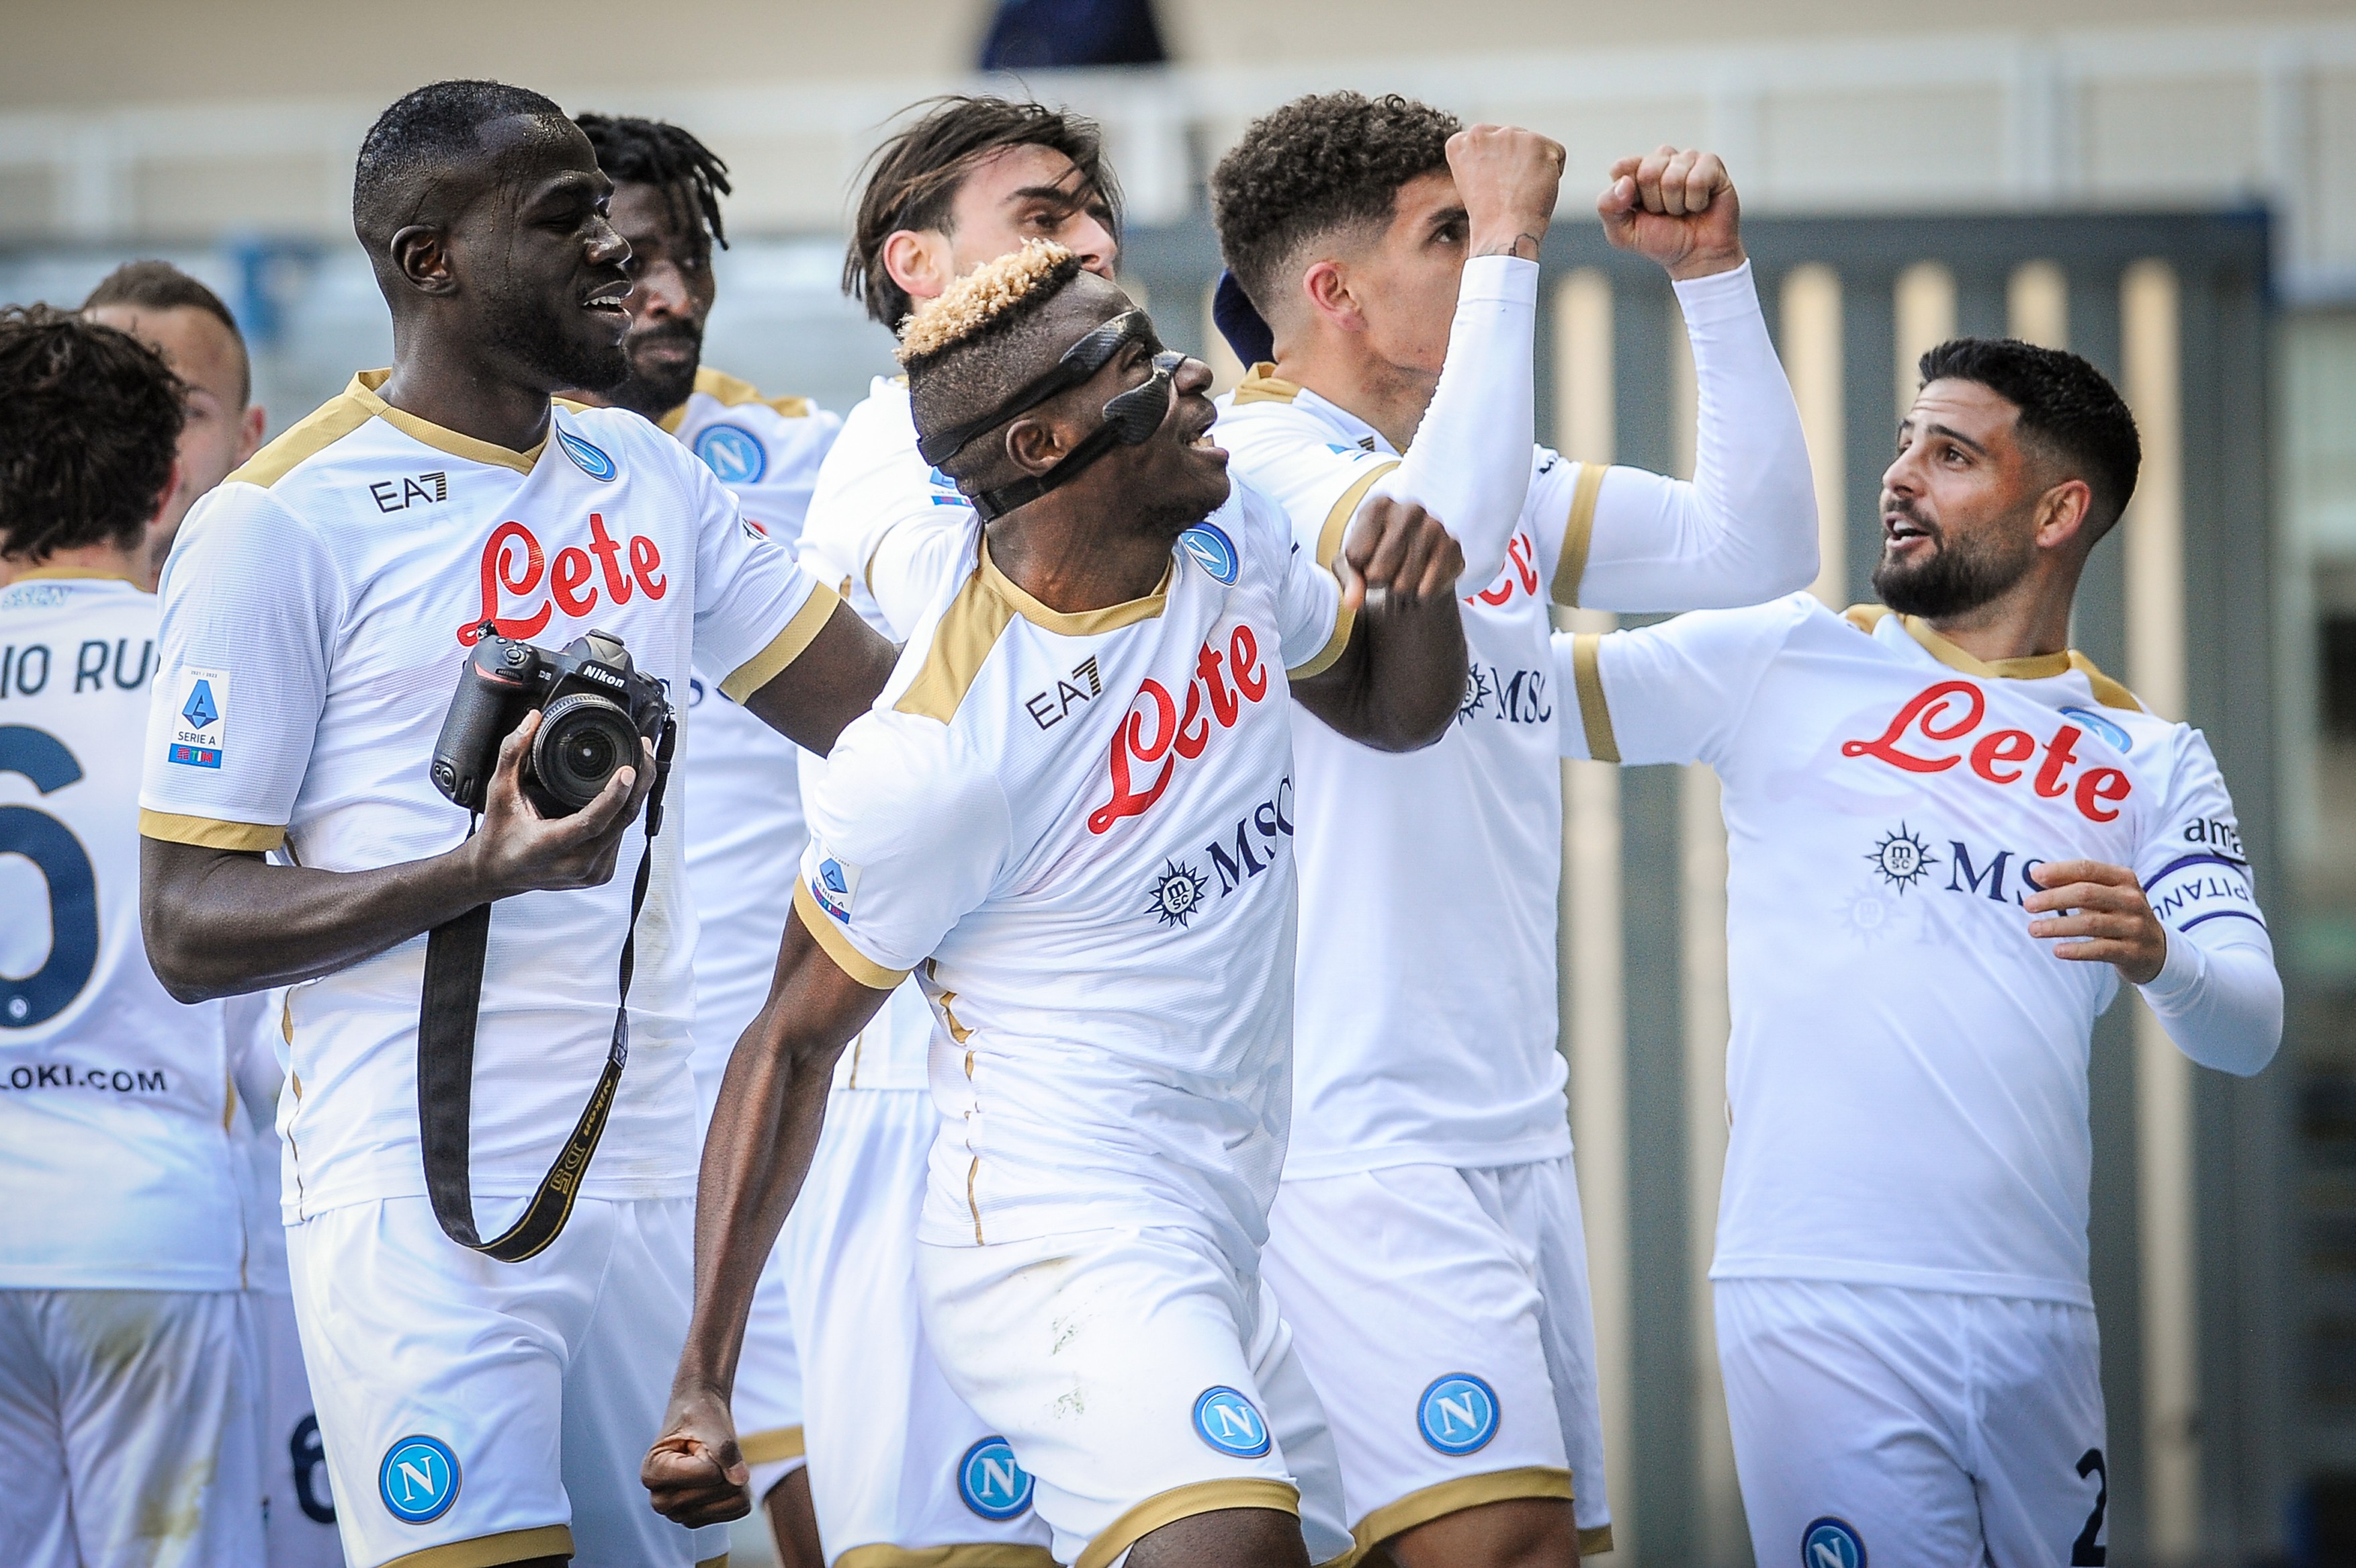 Napoli, victorie cu emoții în fața Veronei, scor 2-1. Continuă lupta pentru primele locuri în Serie A